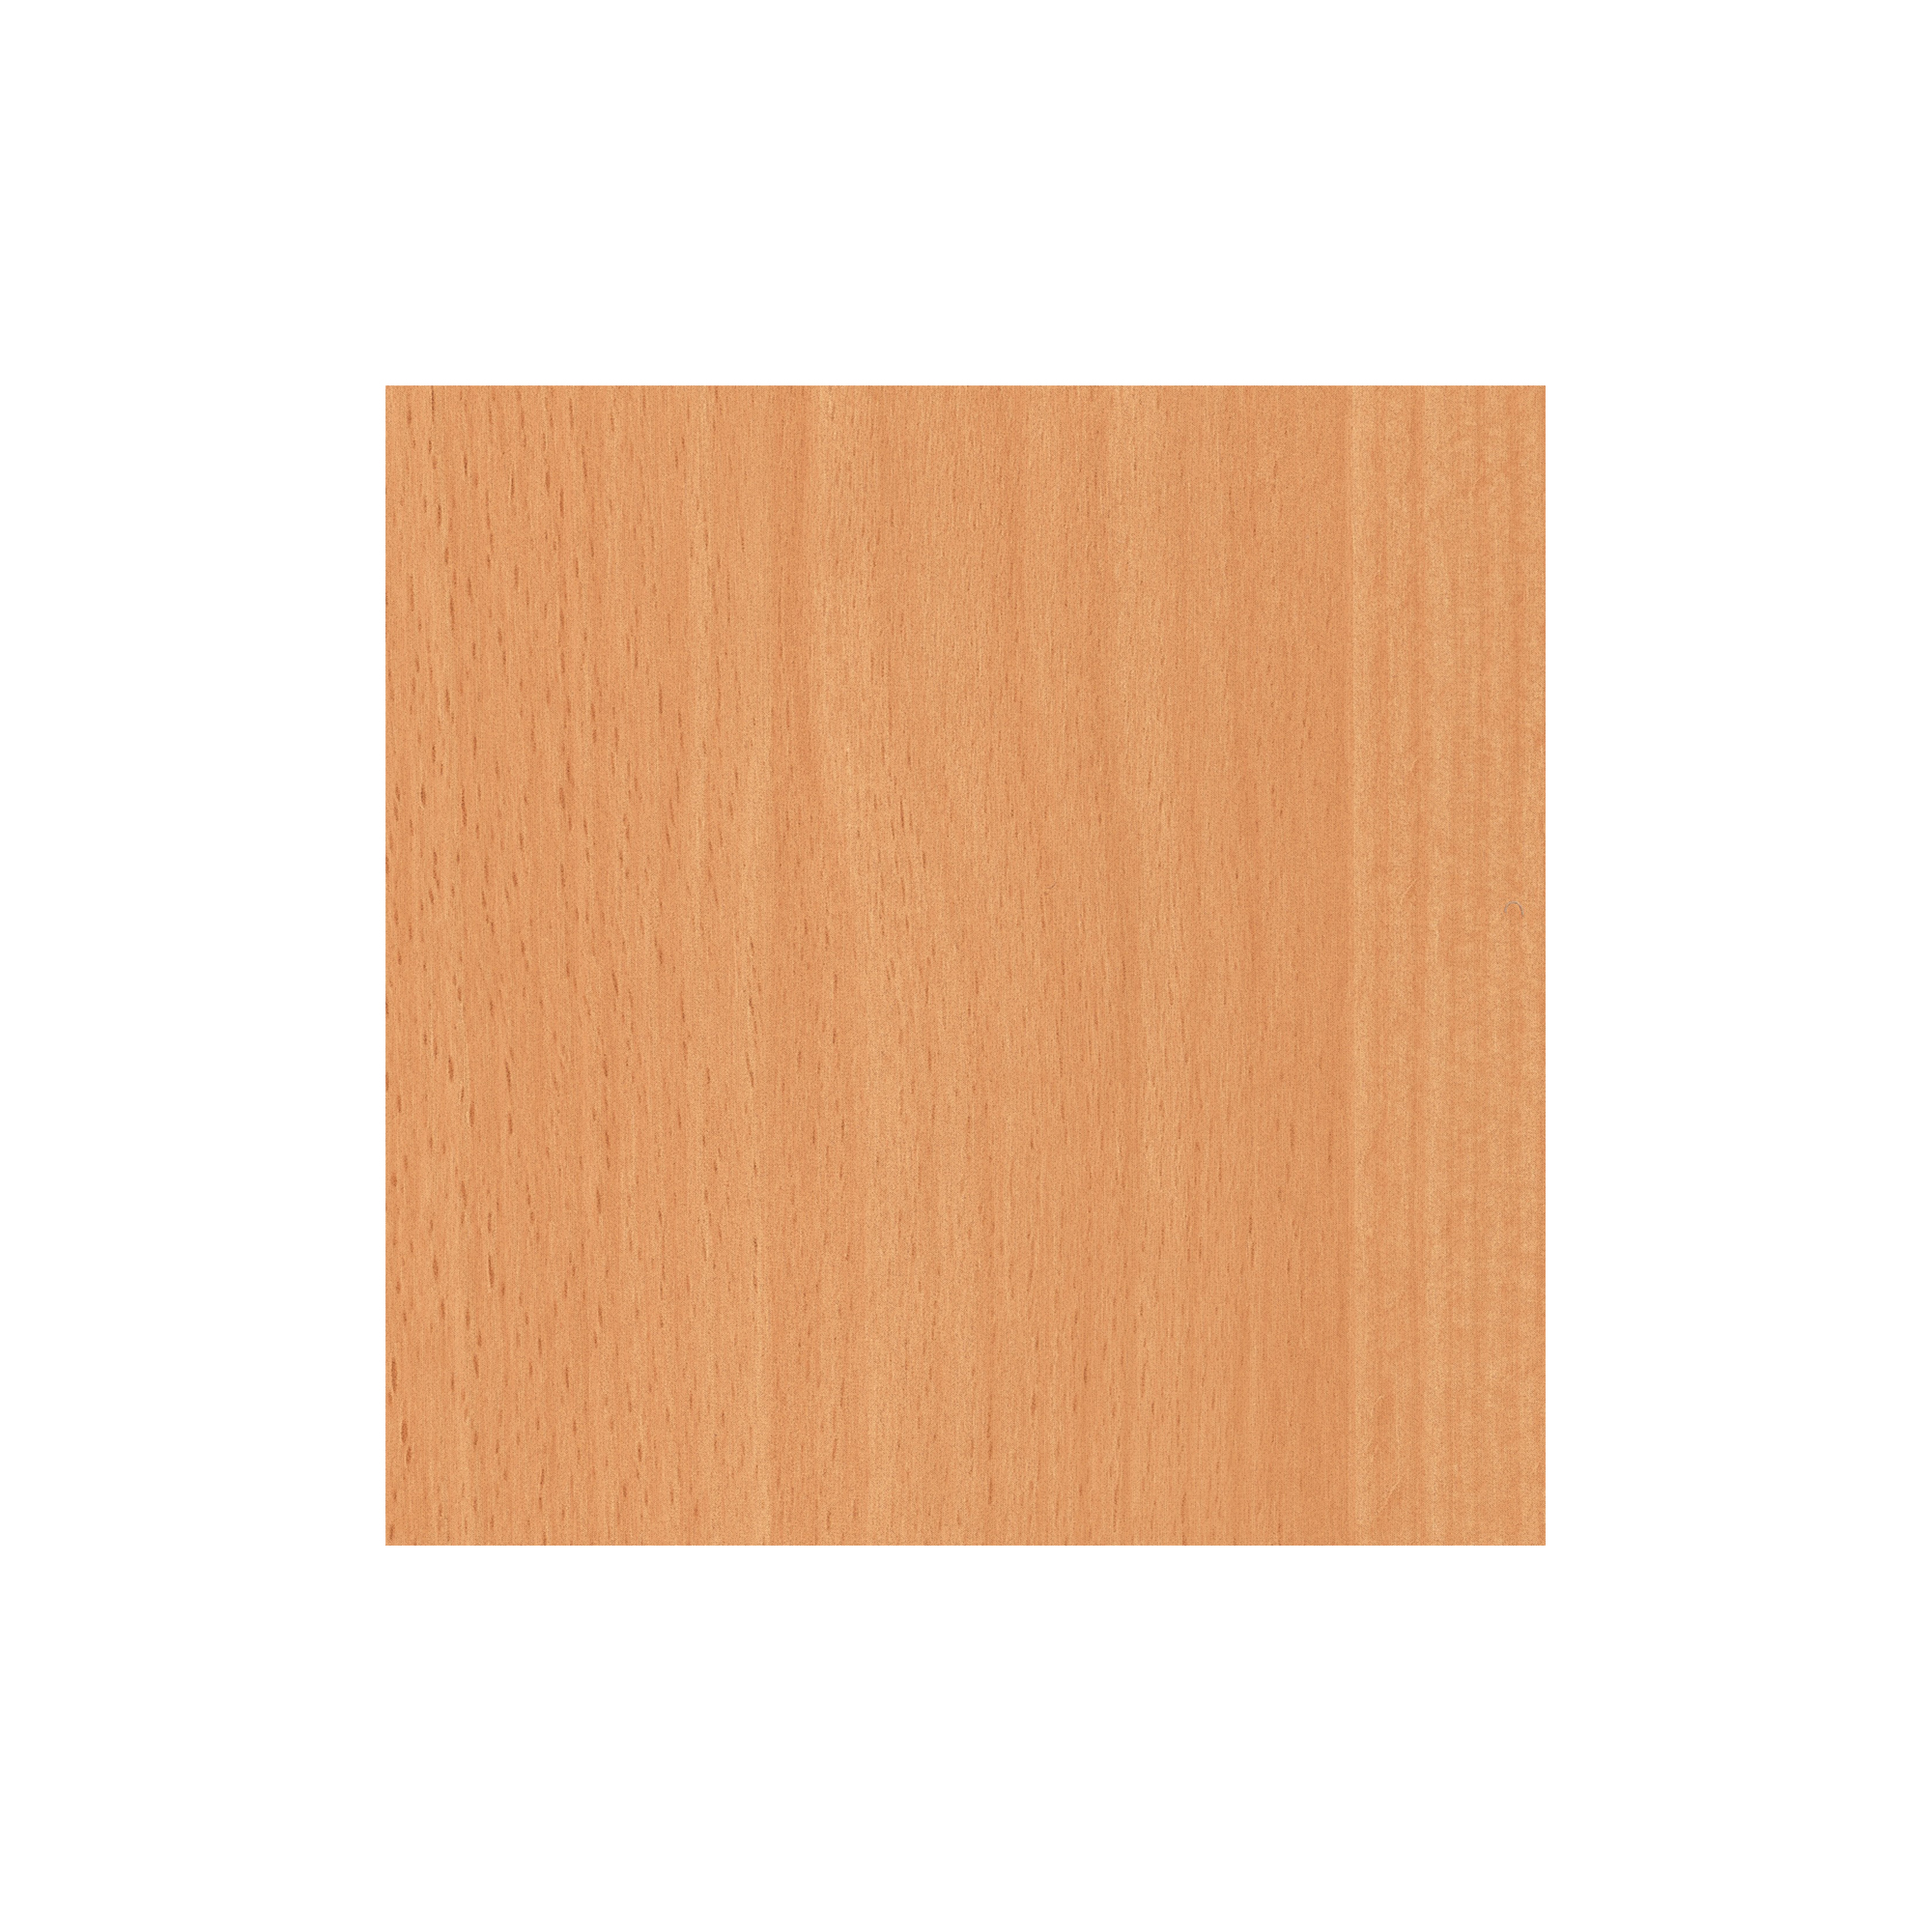 d-c-fix vinilo adhesivo muebles Madera de nácar blanco efecto madera  autoadhesivo impermeable decorativo para cocina, armario, puerta, mesa  papel